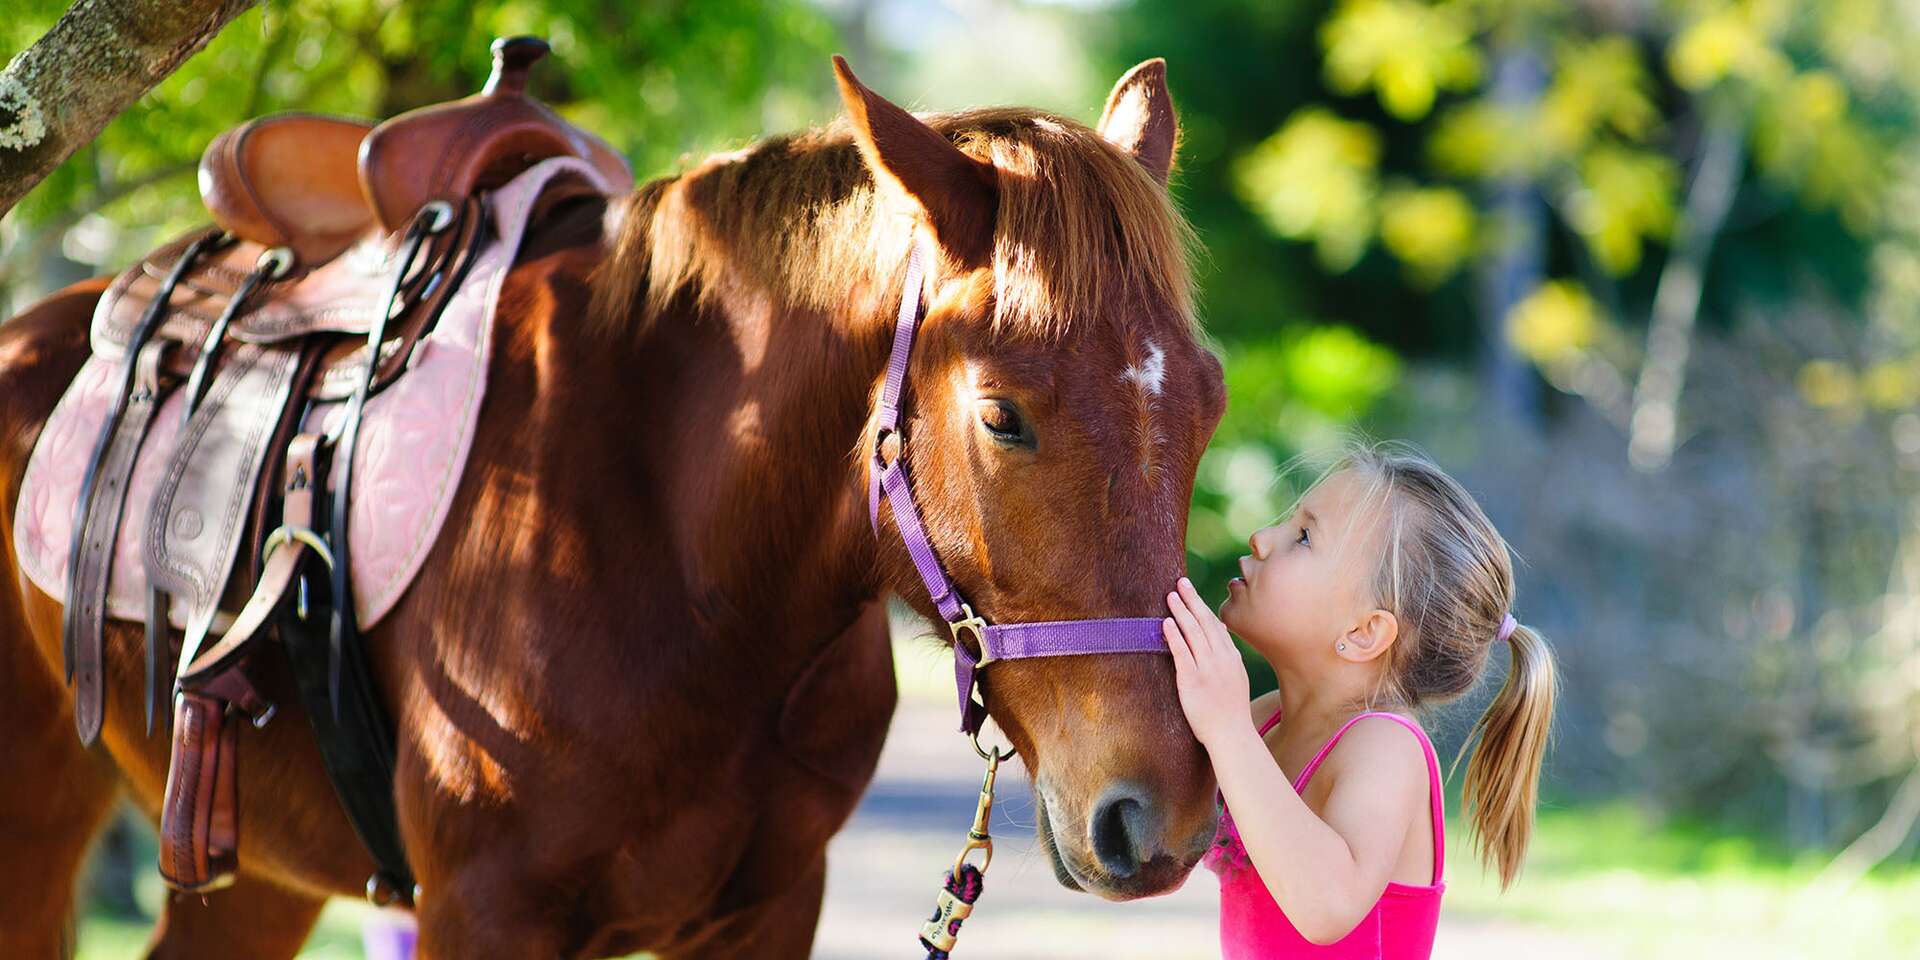 Horse kids. Лошадь для детей. Маленькие дети на лошади. Прогулка на лошадке в зоопарке дети. Интересные факты о лошадях для детей.